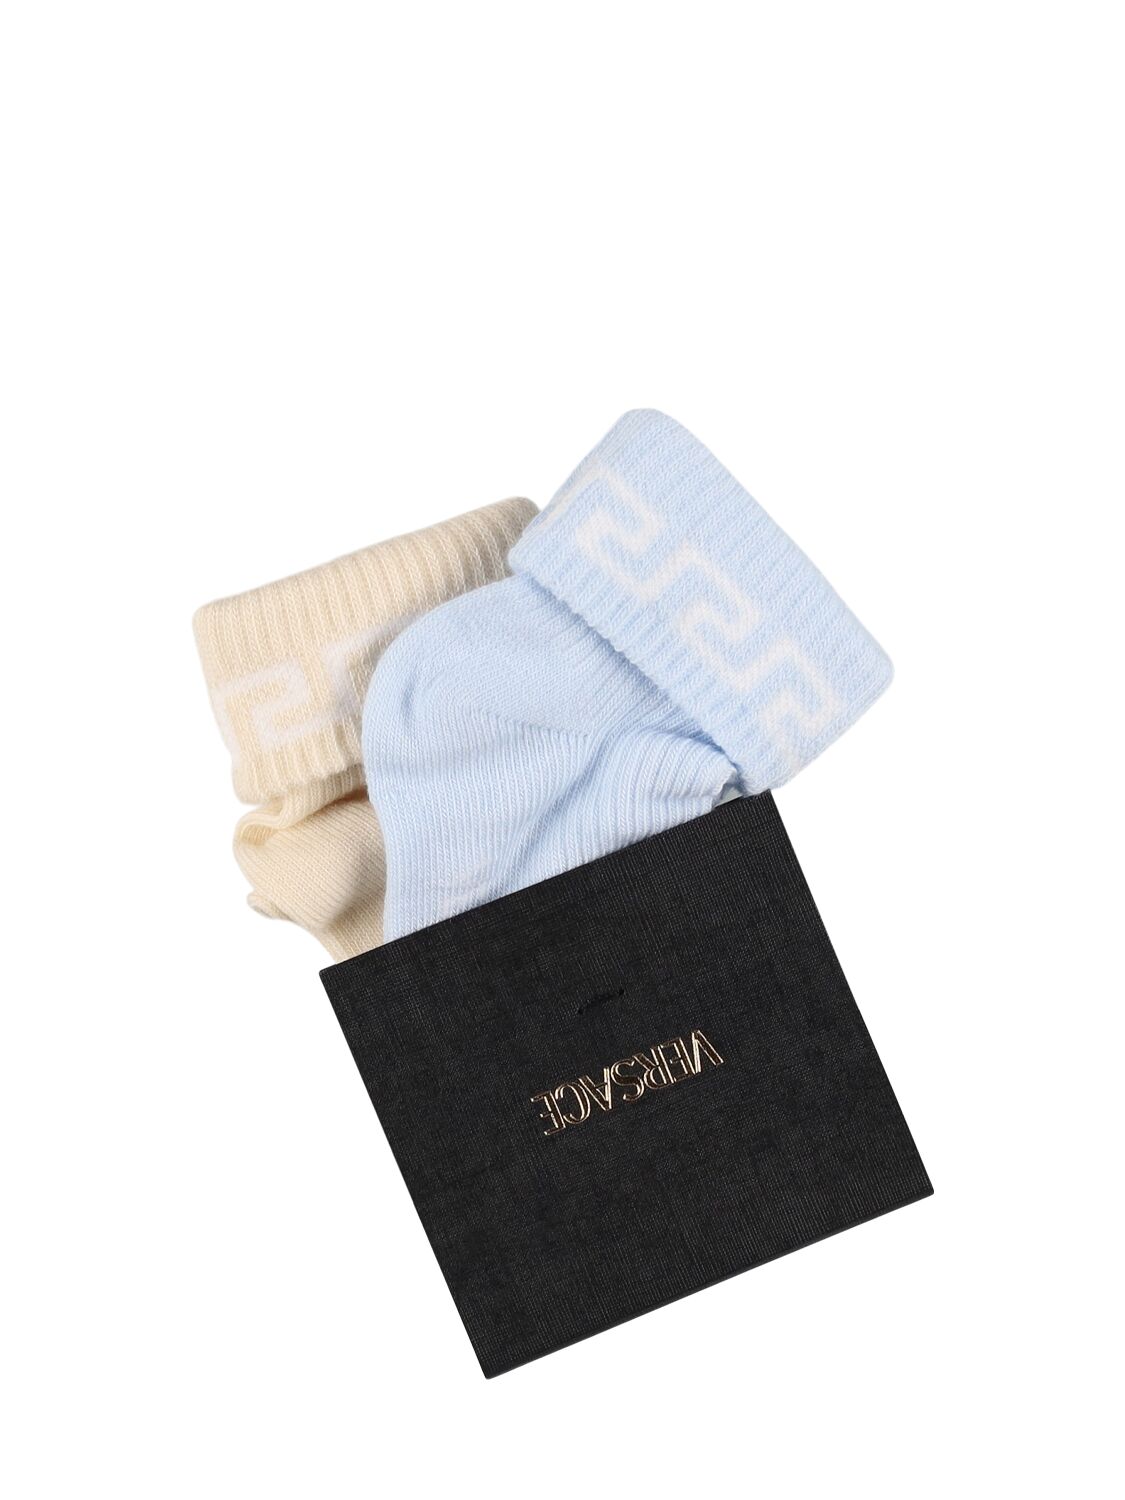 Versace Set Of 2 Cotton Knit Socks In Beige/light Blue